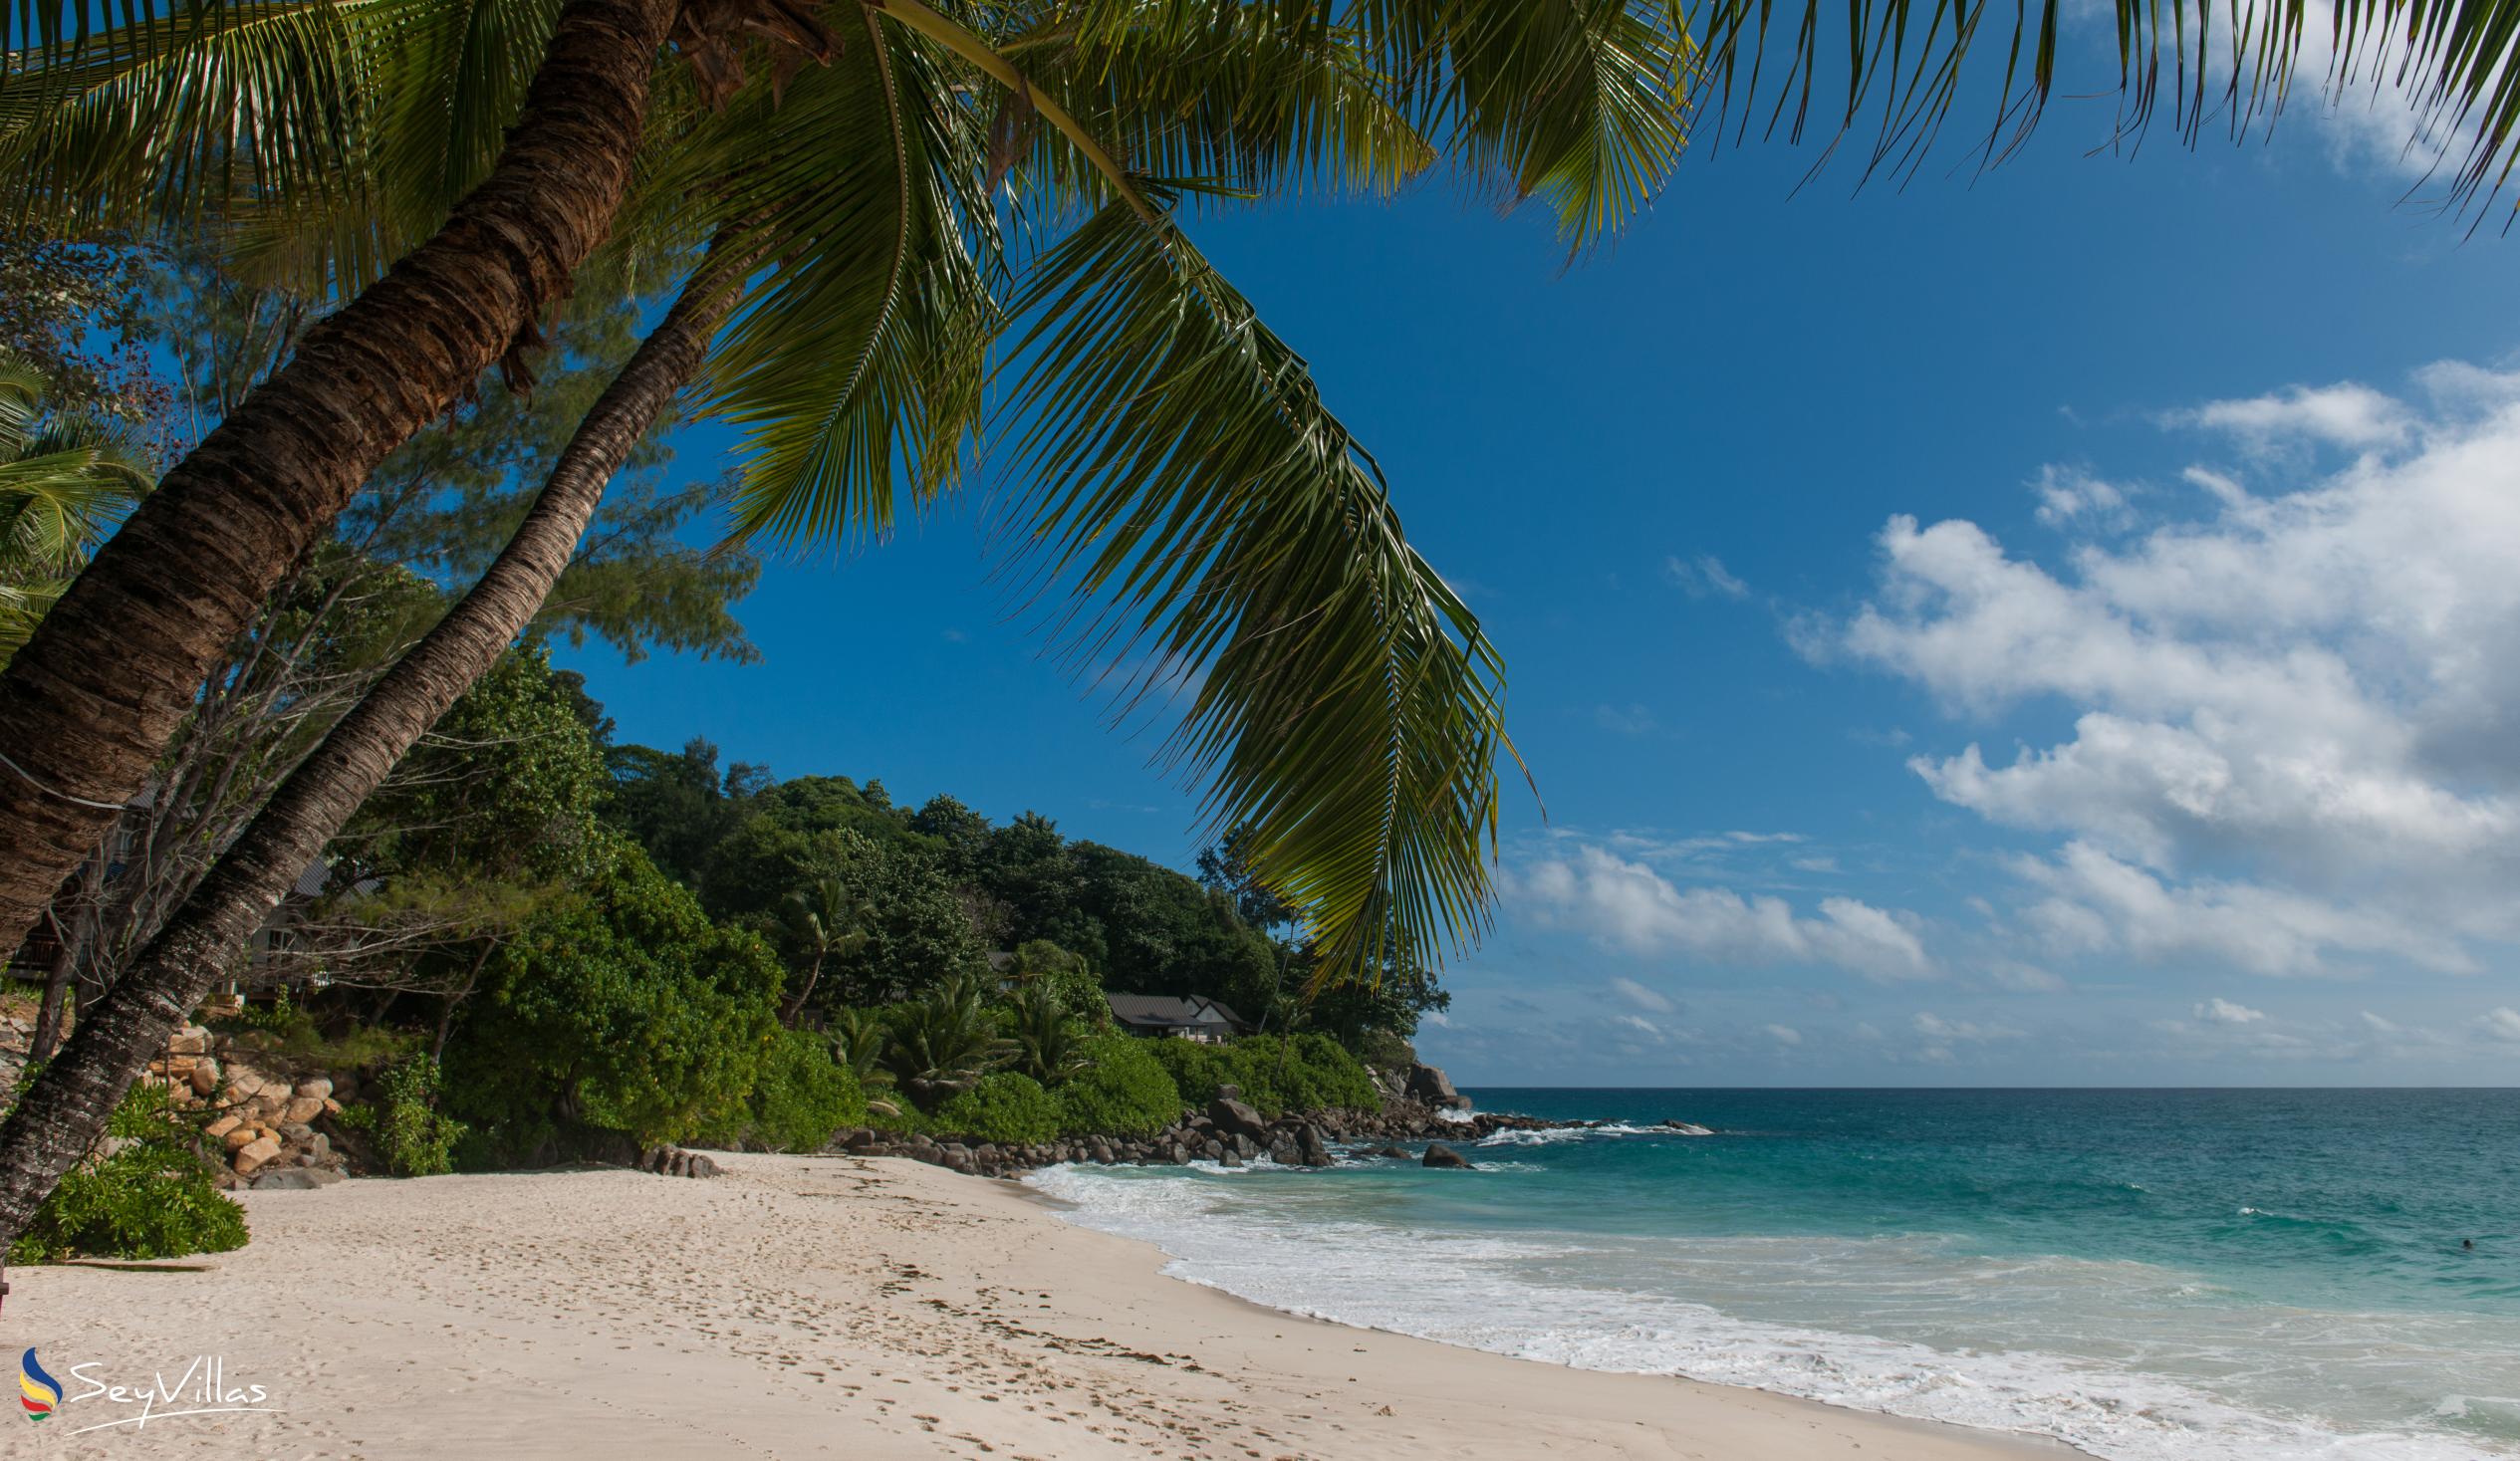 Foto 63: Carana Beach Hotel - Location - Mahé (Seychelles)